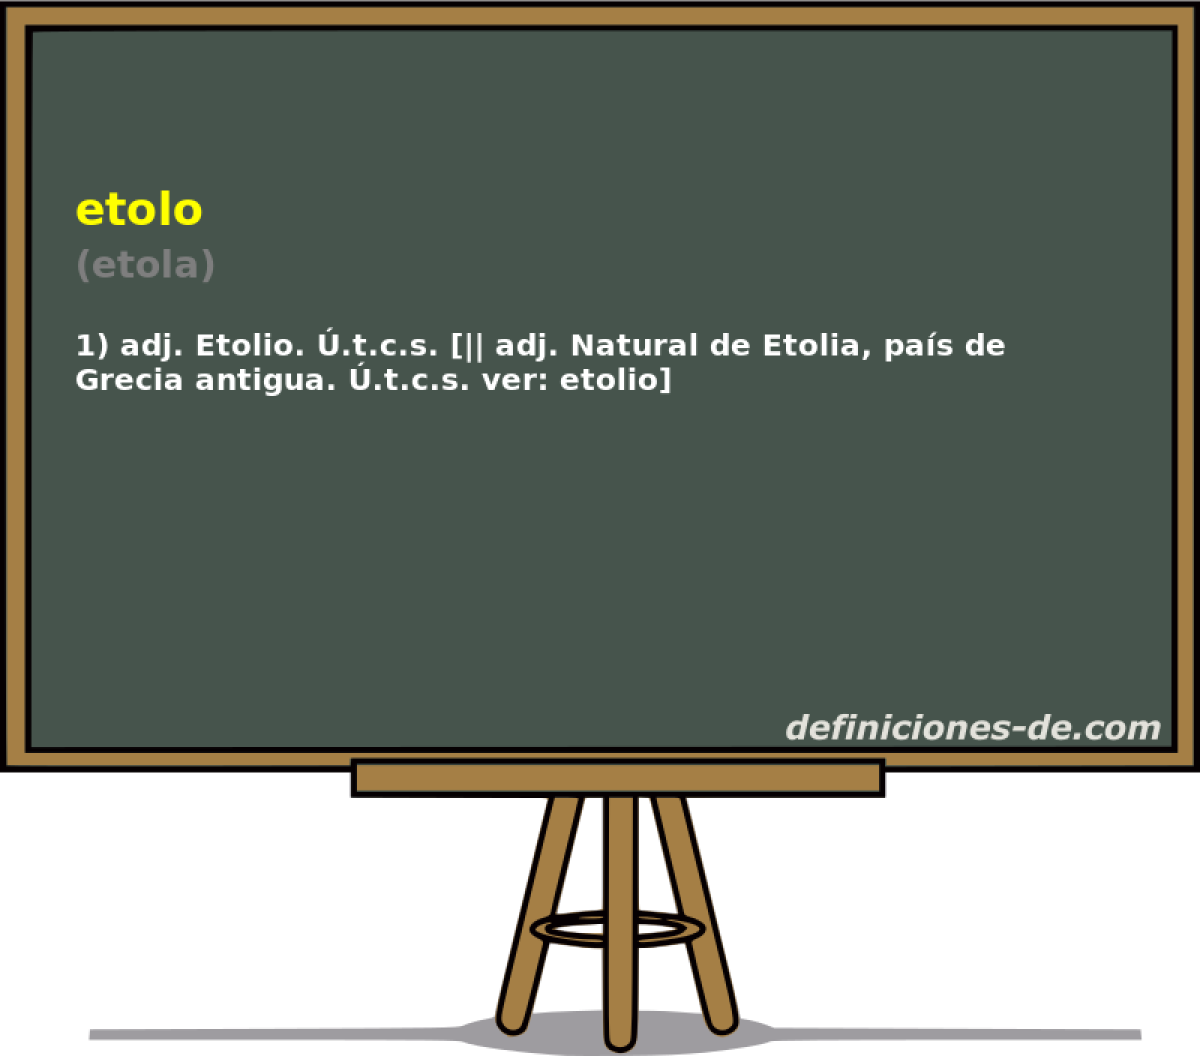 etolo (etola)